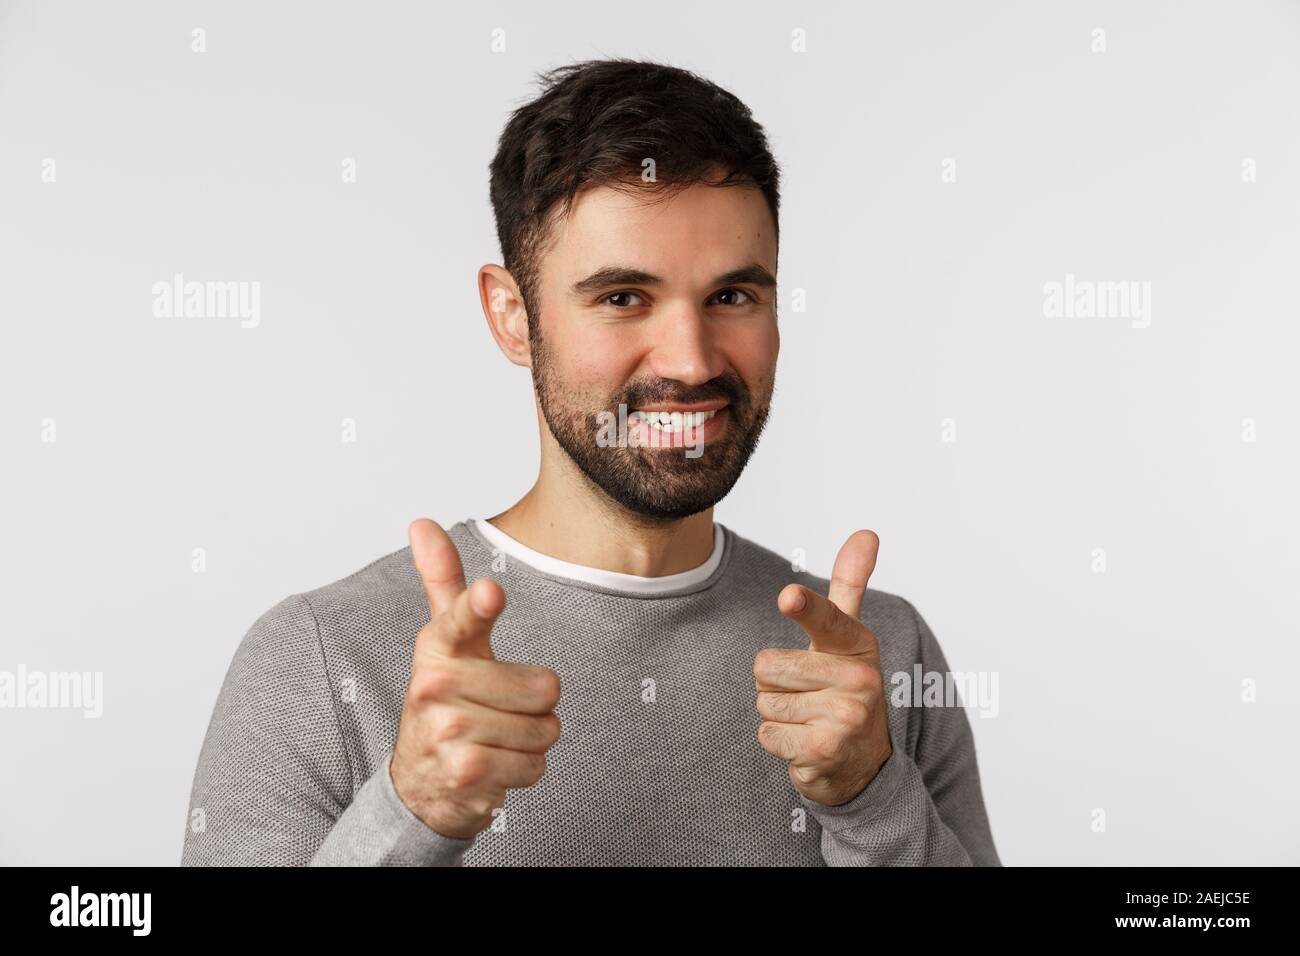 Gotcha. Frech, lustig, gut aussehenden bärtigen Kaukasier Männlich in graue  Strickjacke, Kamera finger Pistolen und freudig lächelnd beglückwünschen  Stockfotografie - Alamy